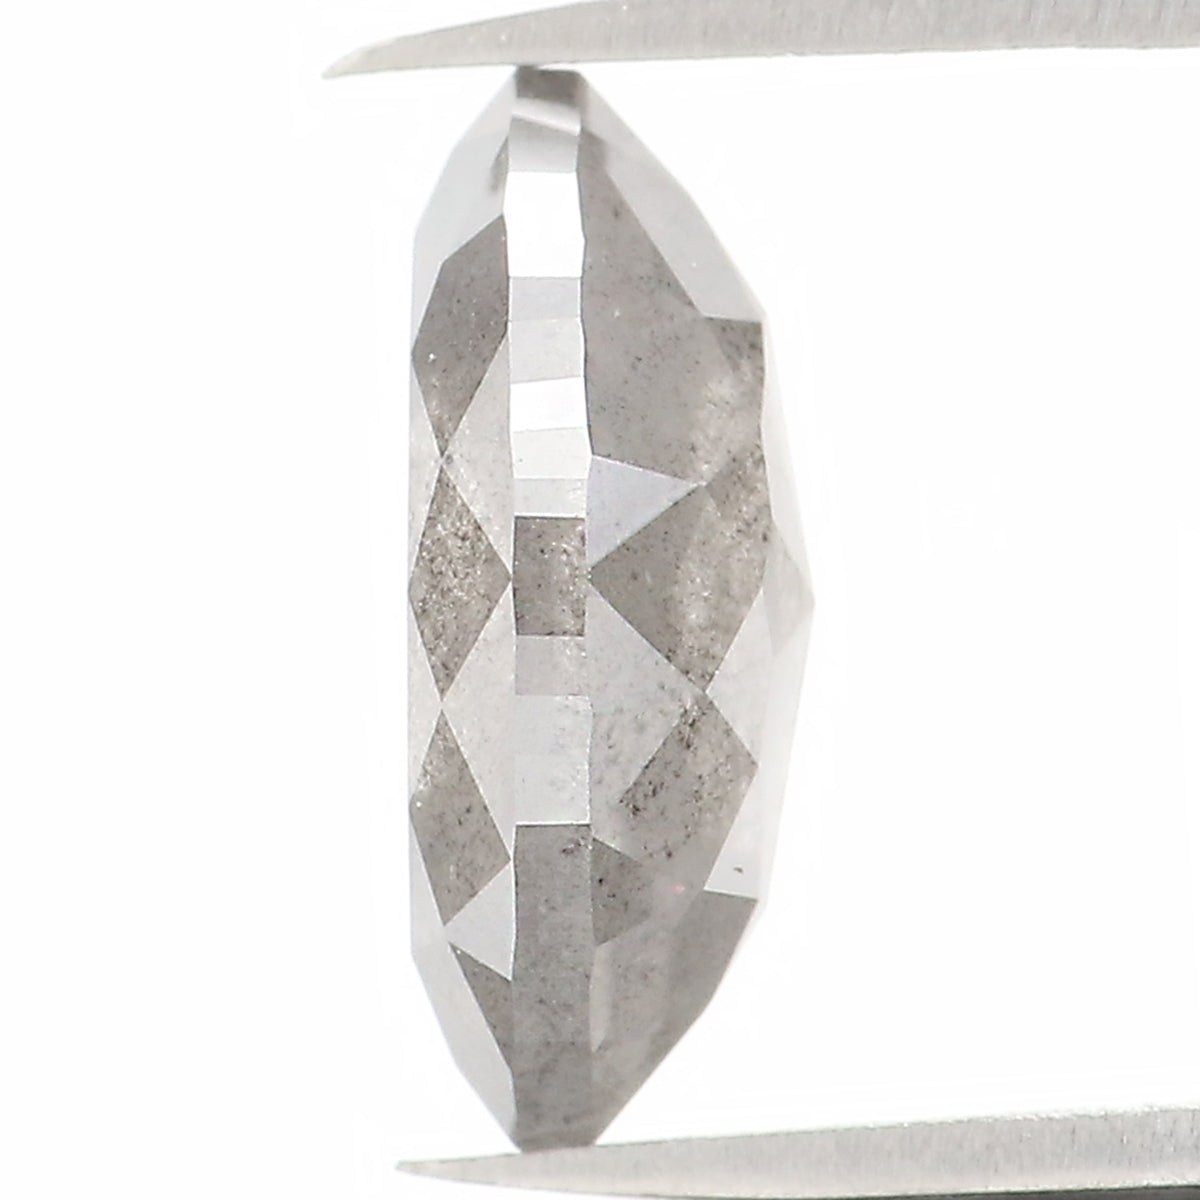 1.67 CT Natural Loose Marquise Shape Diamond Salt And Pepper Loose Marquise Rose Cut Diamond 9.65 MM Grey Color Marquise Cut Diamond QL1124